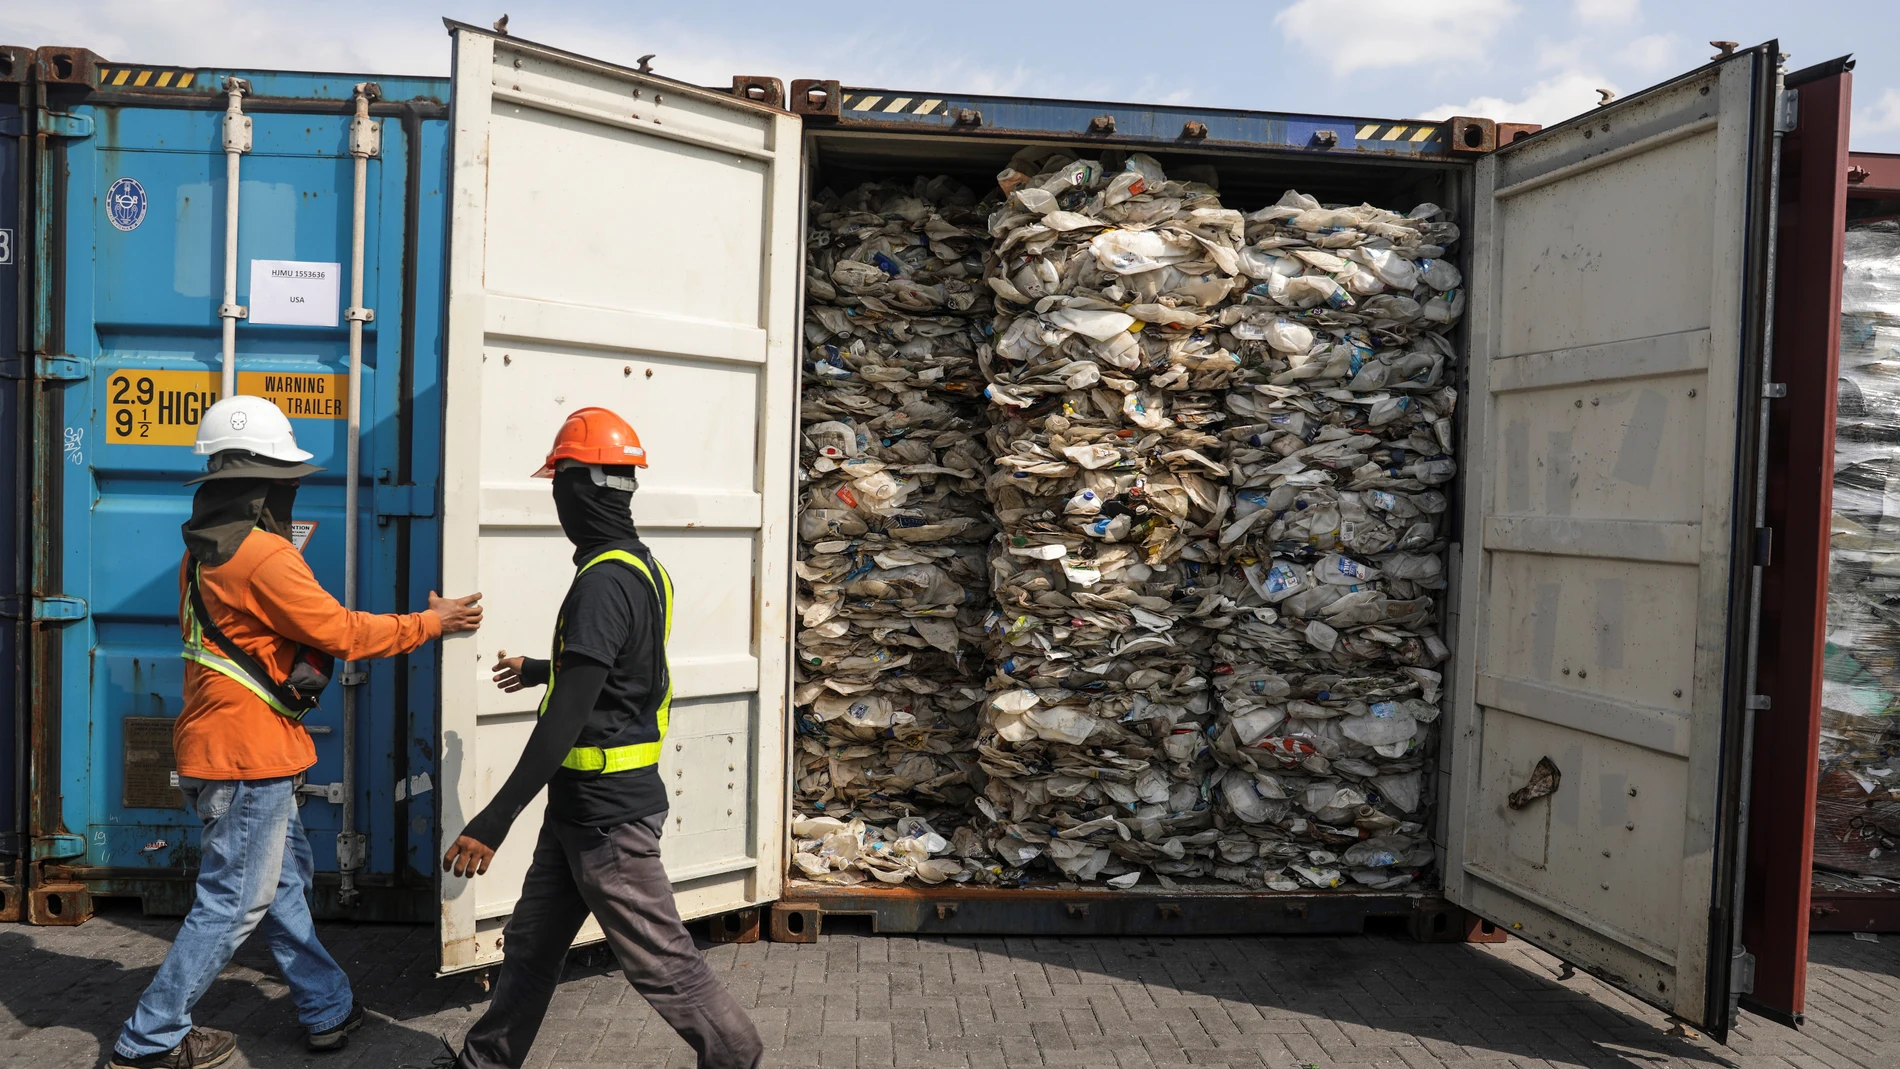 Malasia devolverá 3.000 toneladas de plástico no reciclable a sus países de origen.